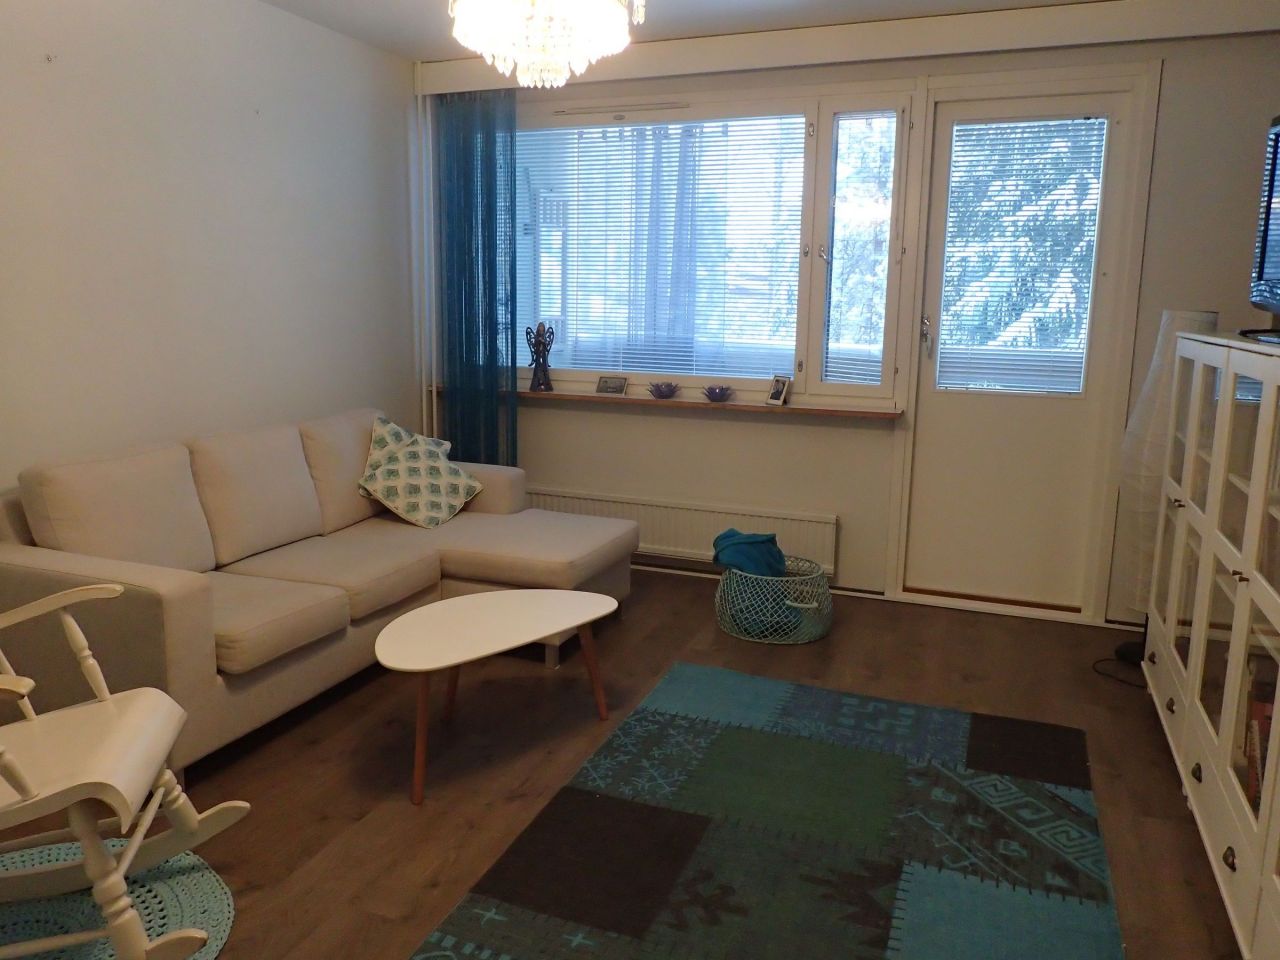 Квартира в Симпеле, Финляндия, 58 м2 - фото 1